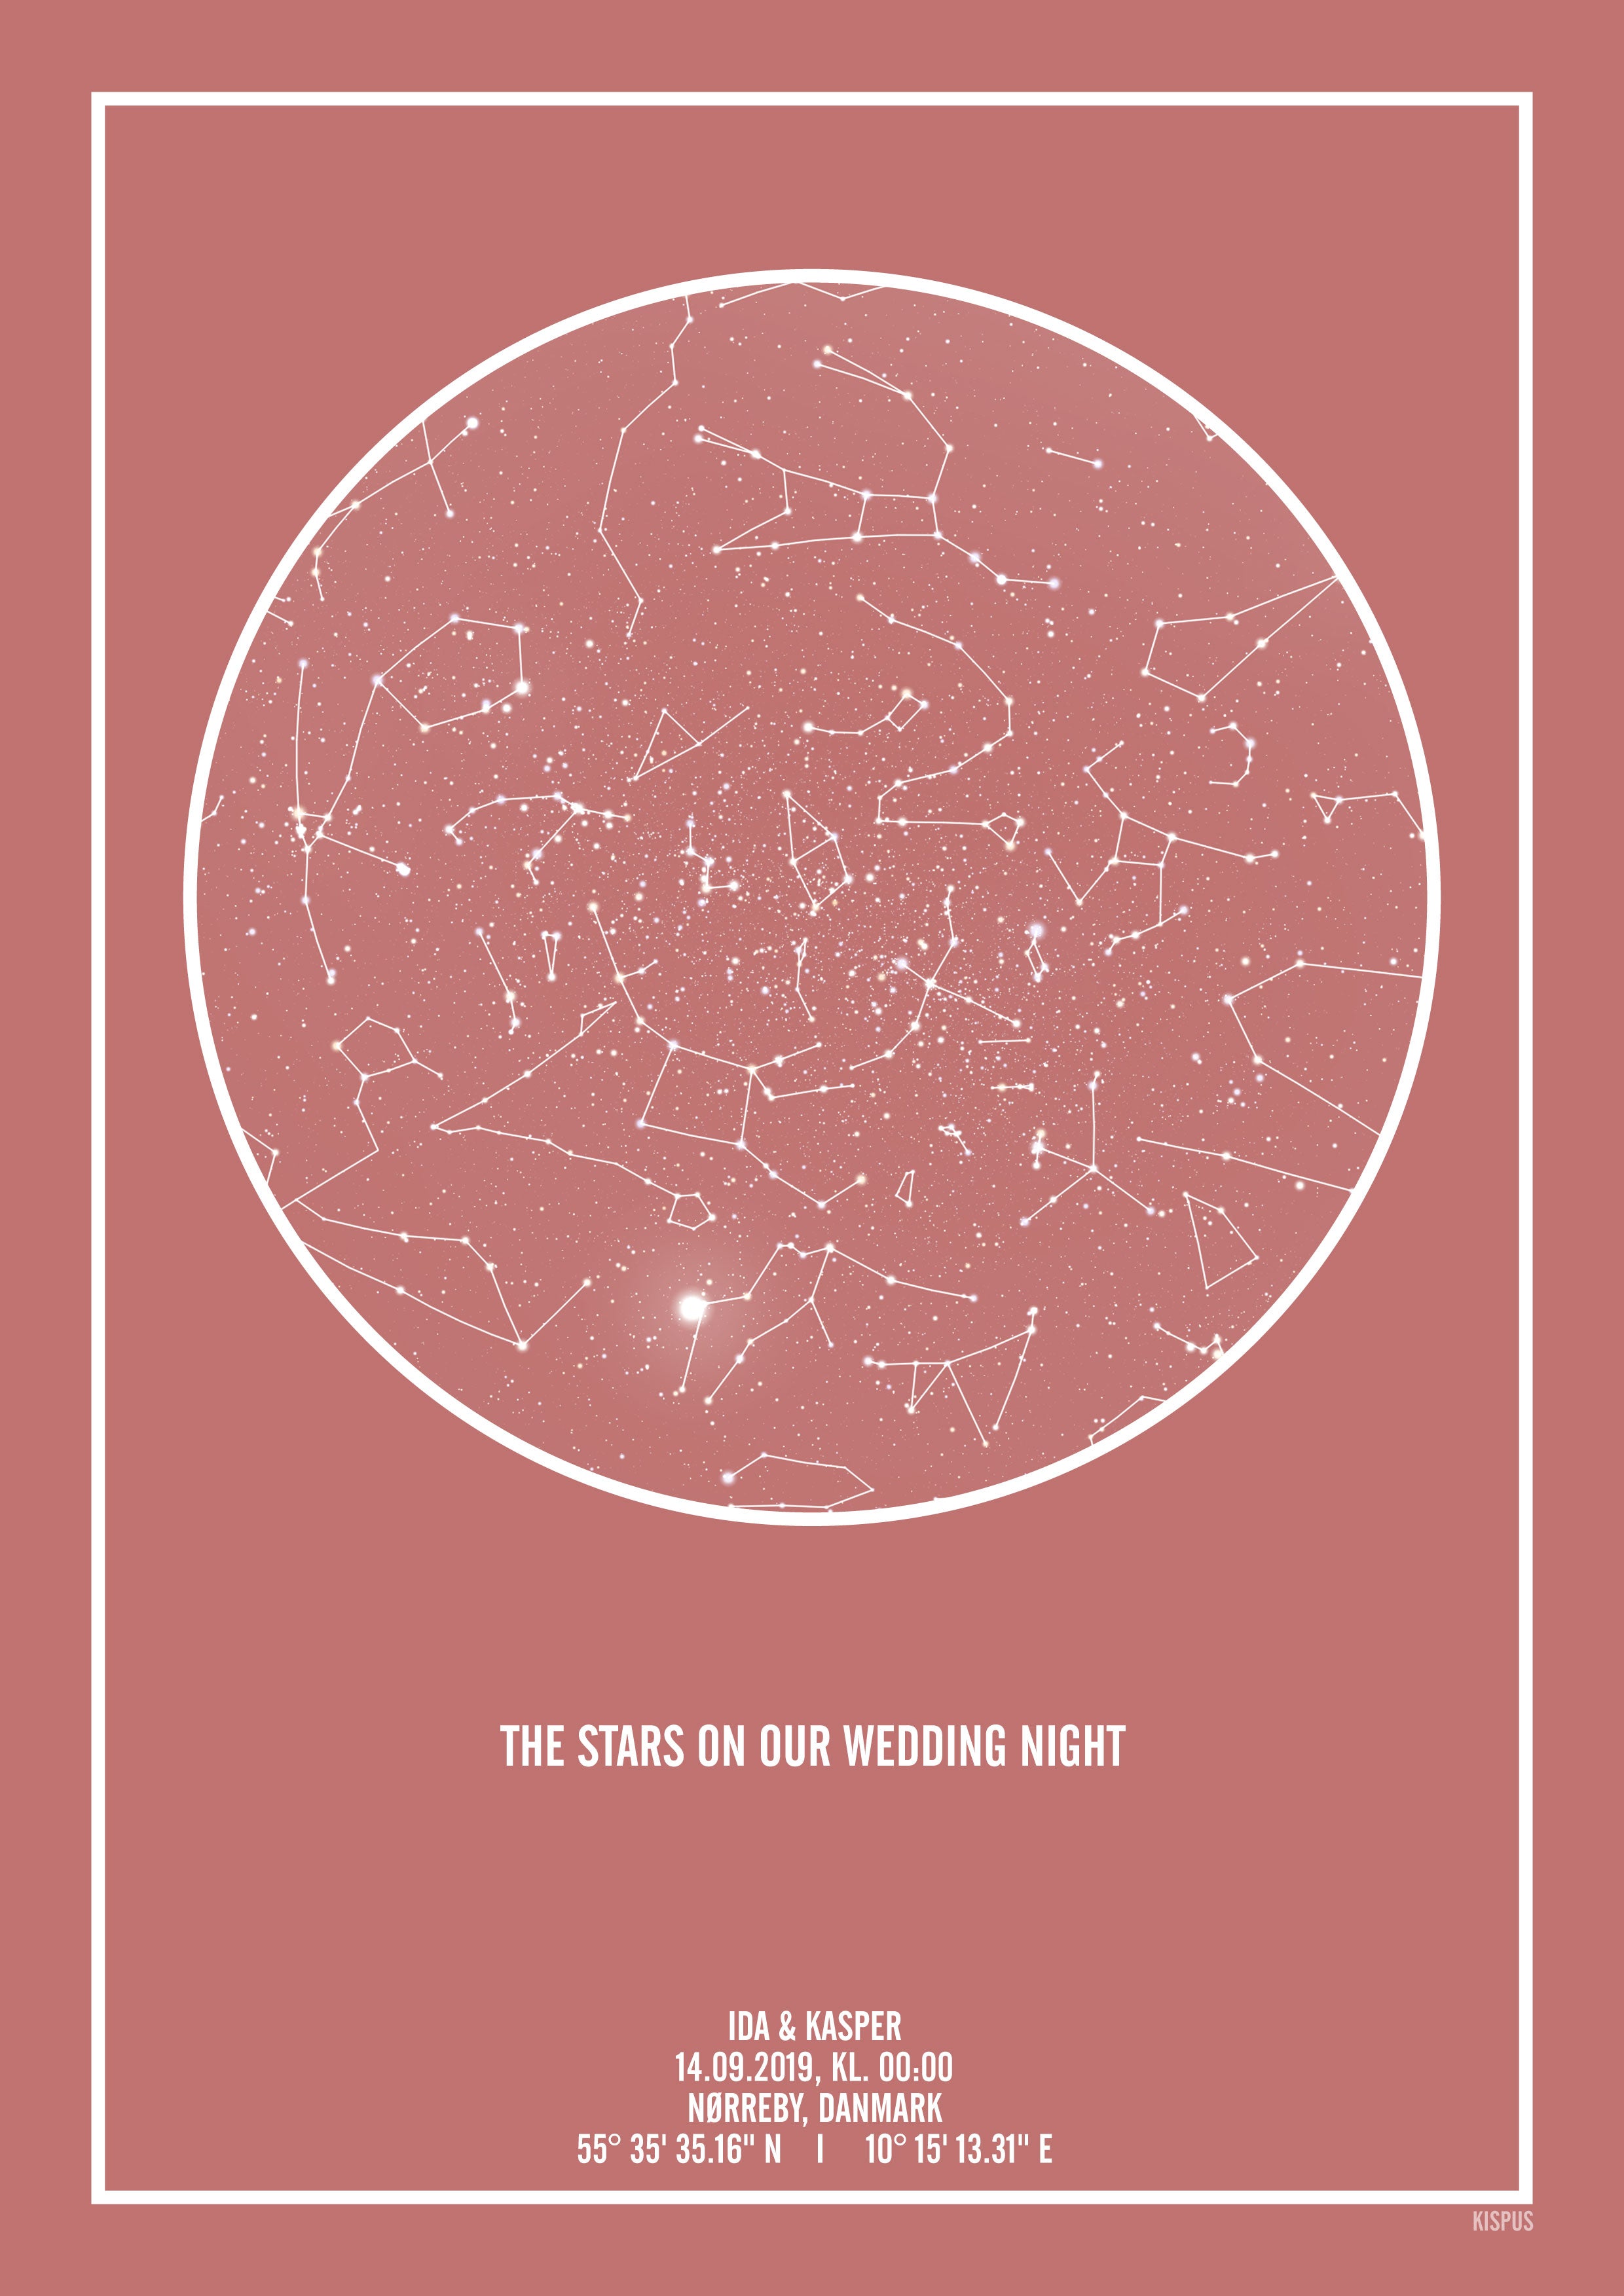 PERSONLIG STJERNEHIMMEL PLAKAT (BLUSH) - A4 / Hvid tekst + blush-farvet stjernehimmel / Stjernehimmel med stjernebilleder